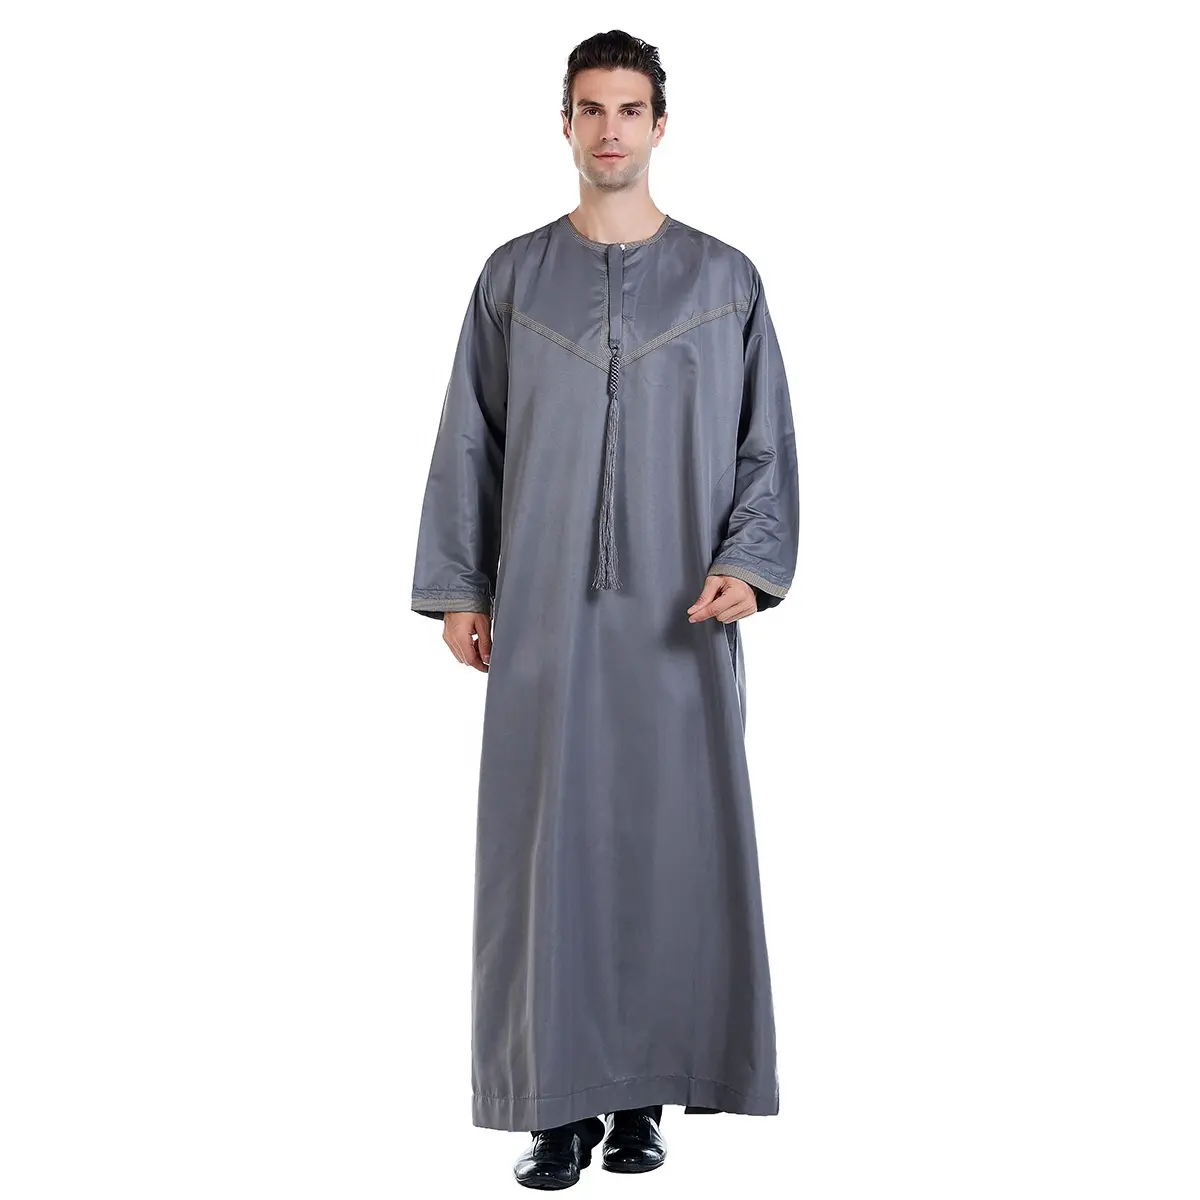 Islamischer Kaftan schwarz Herren Jubba Thobe muslimisches langes Kleid Kimono saudi-arabisches muslimisches einfarbiges Kleid Mittlerer Osten Männer Abaya ethnische Kleidung